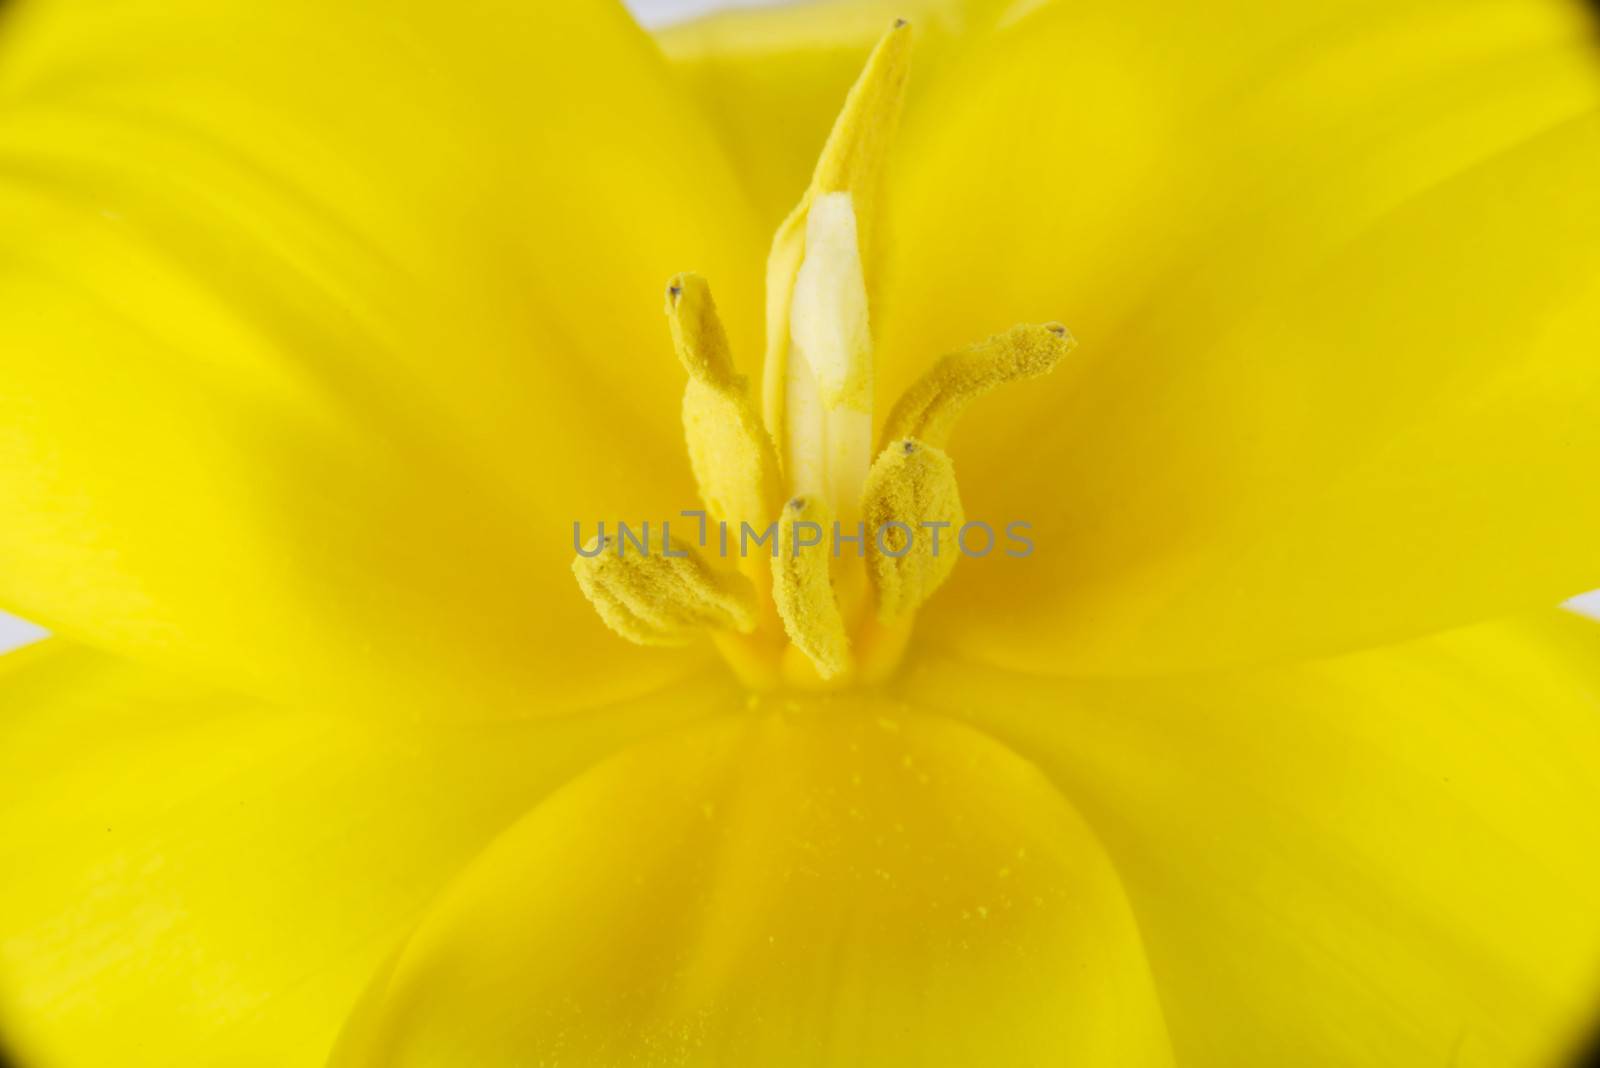 Close up on yellow fresh flower. Macro shot.